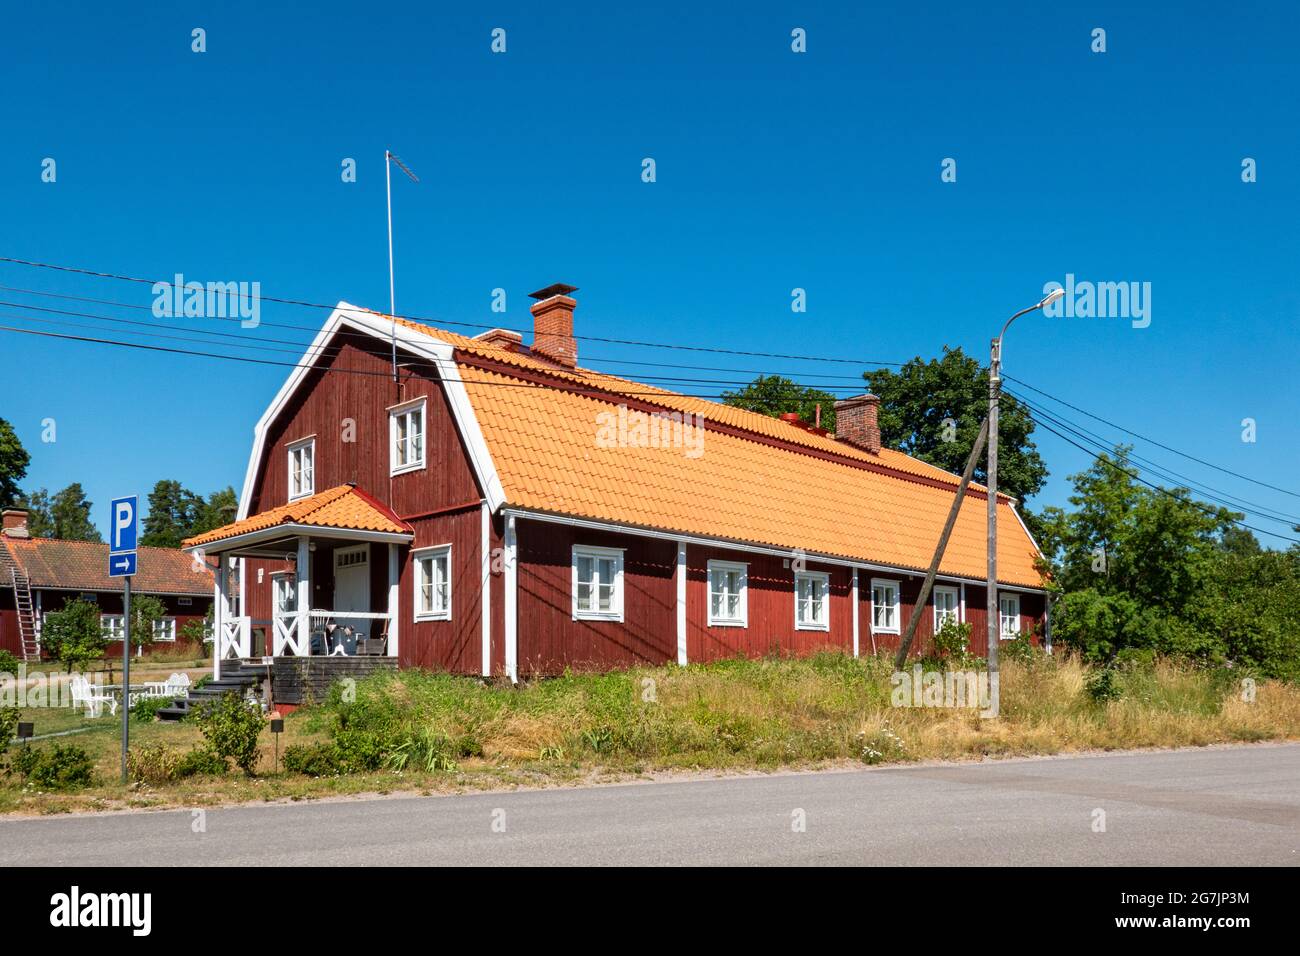 Ancien bâtiment résidentiel en bois ou maison à Strömfors ou Ruotsinpyhtää village de Loviisa, Finlande Banque D'Images